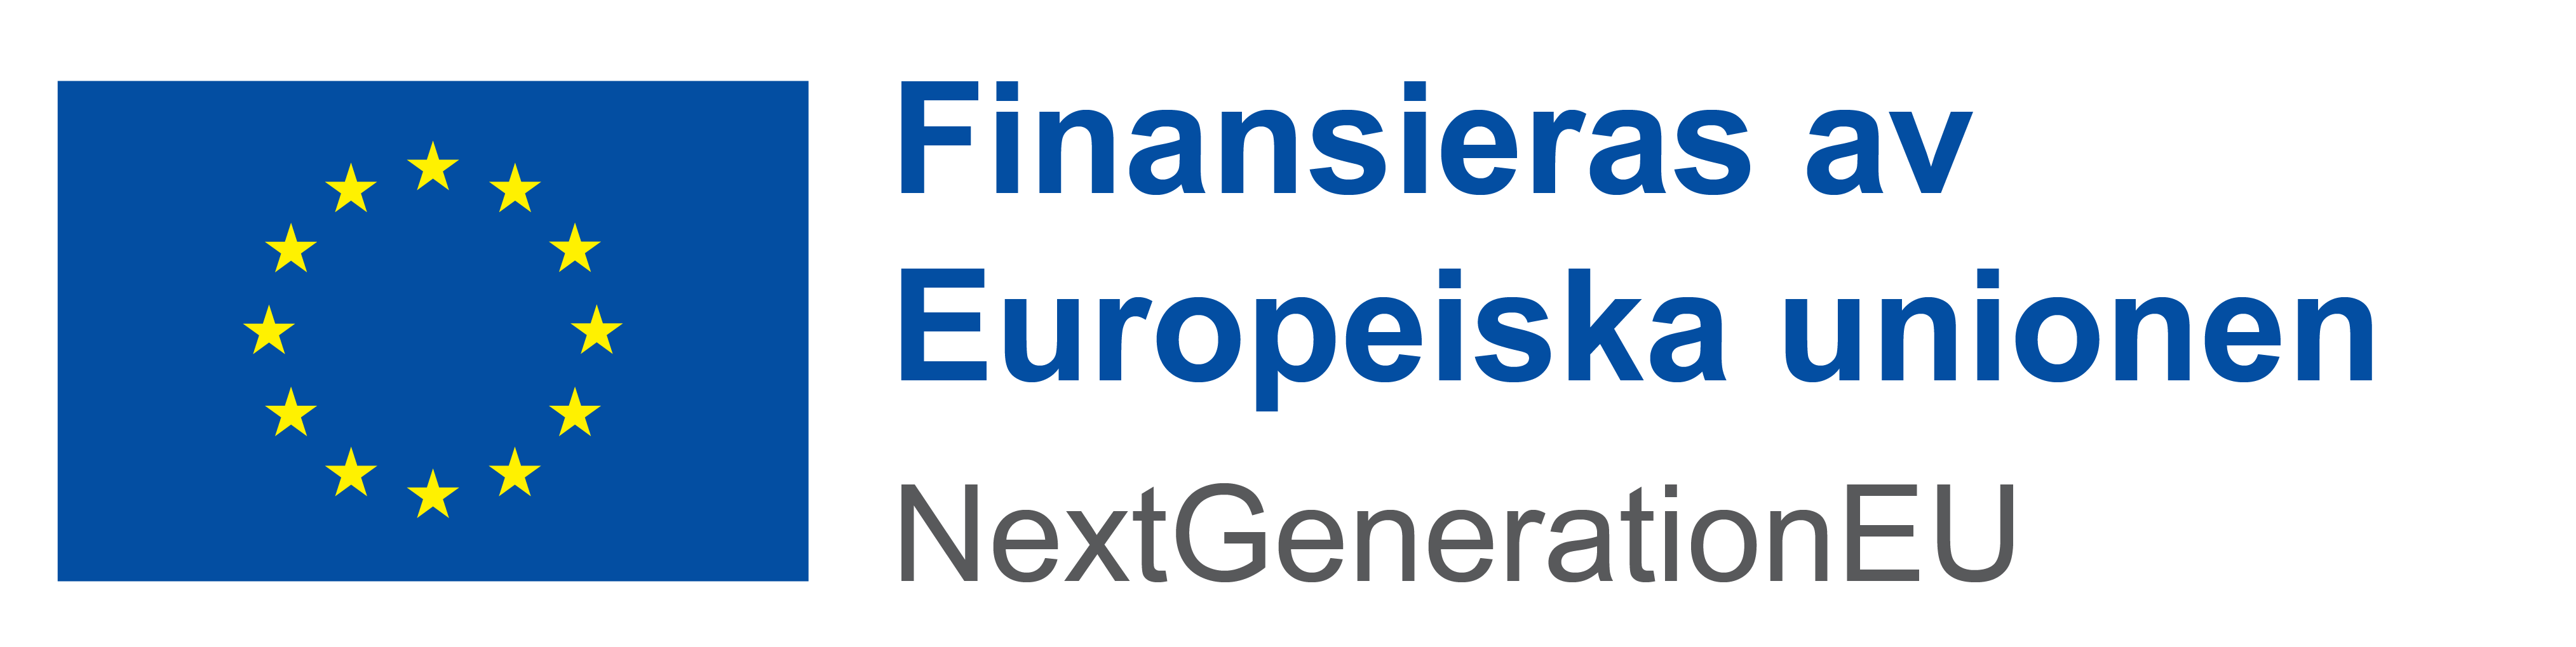 EU-logga Finansieras av Europeiska unionen